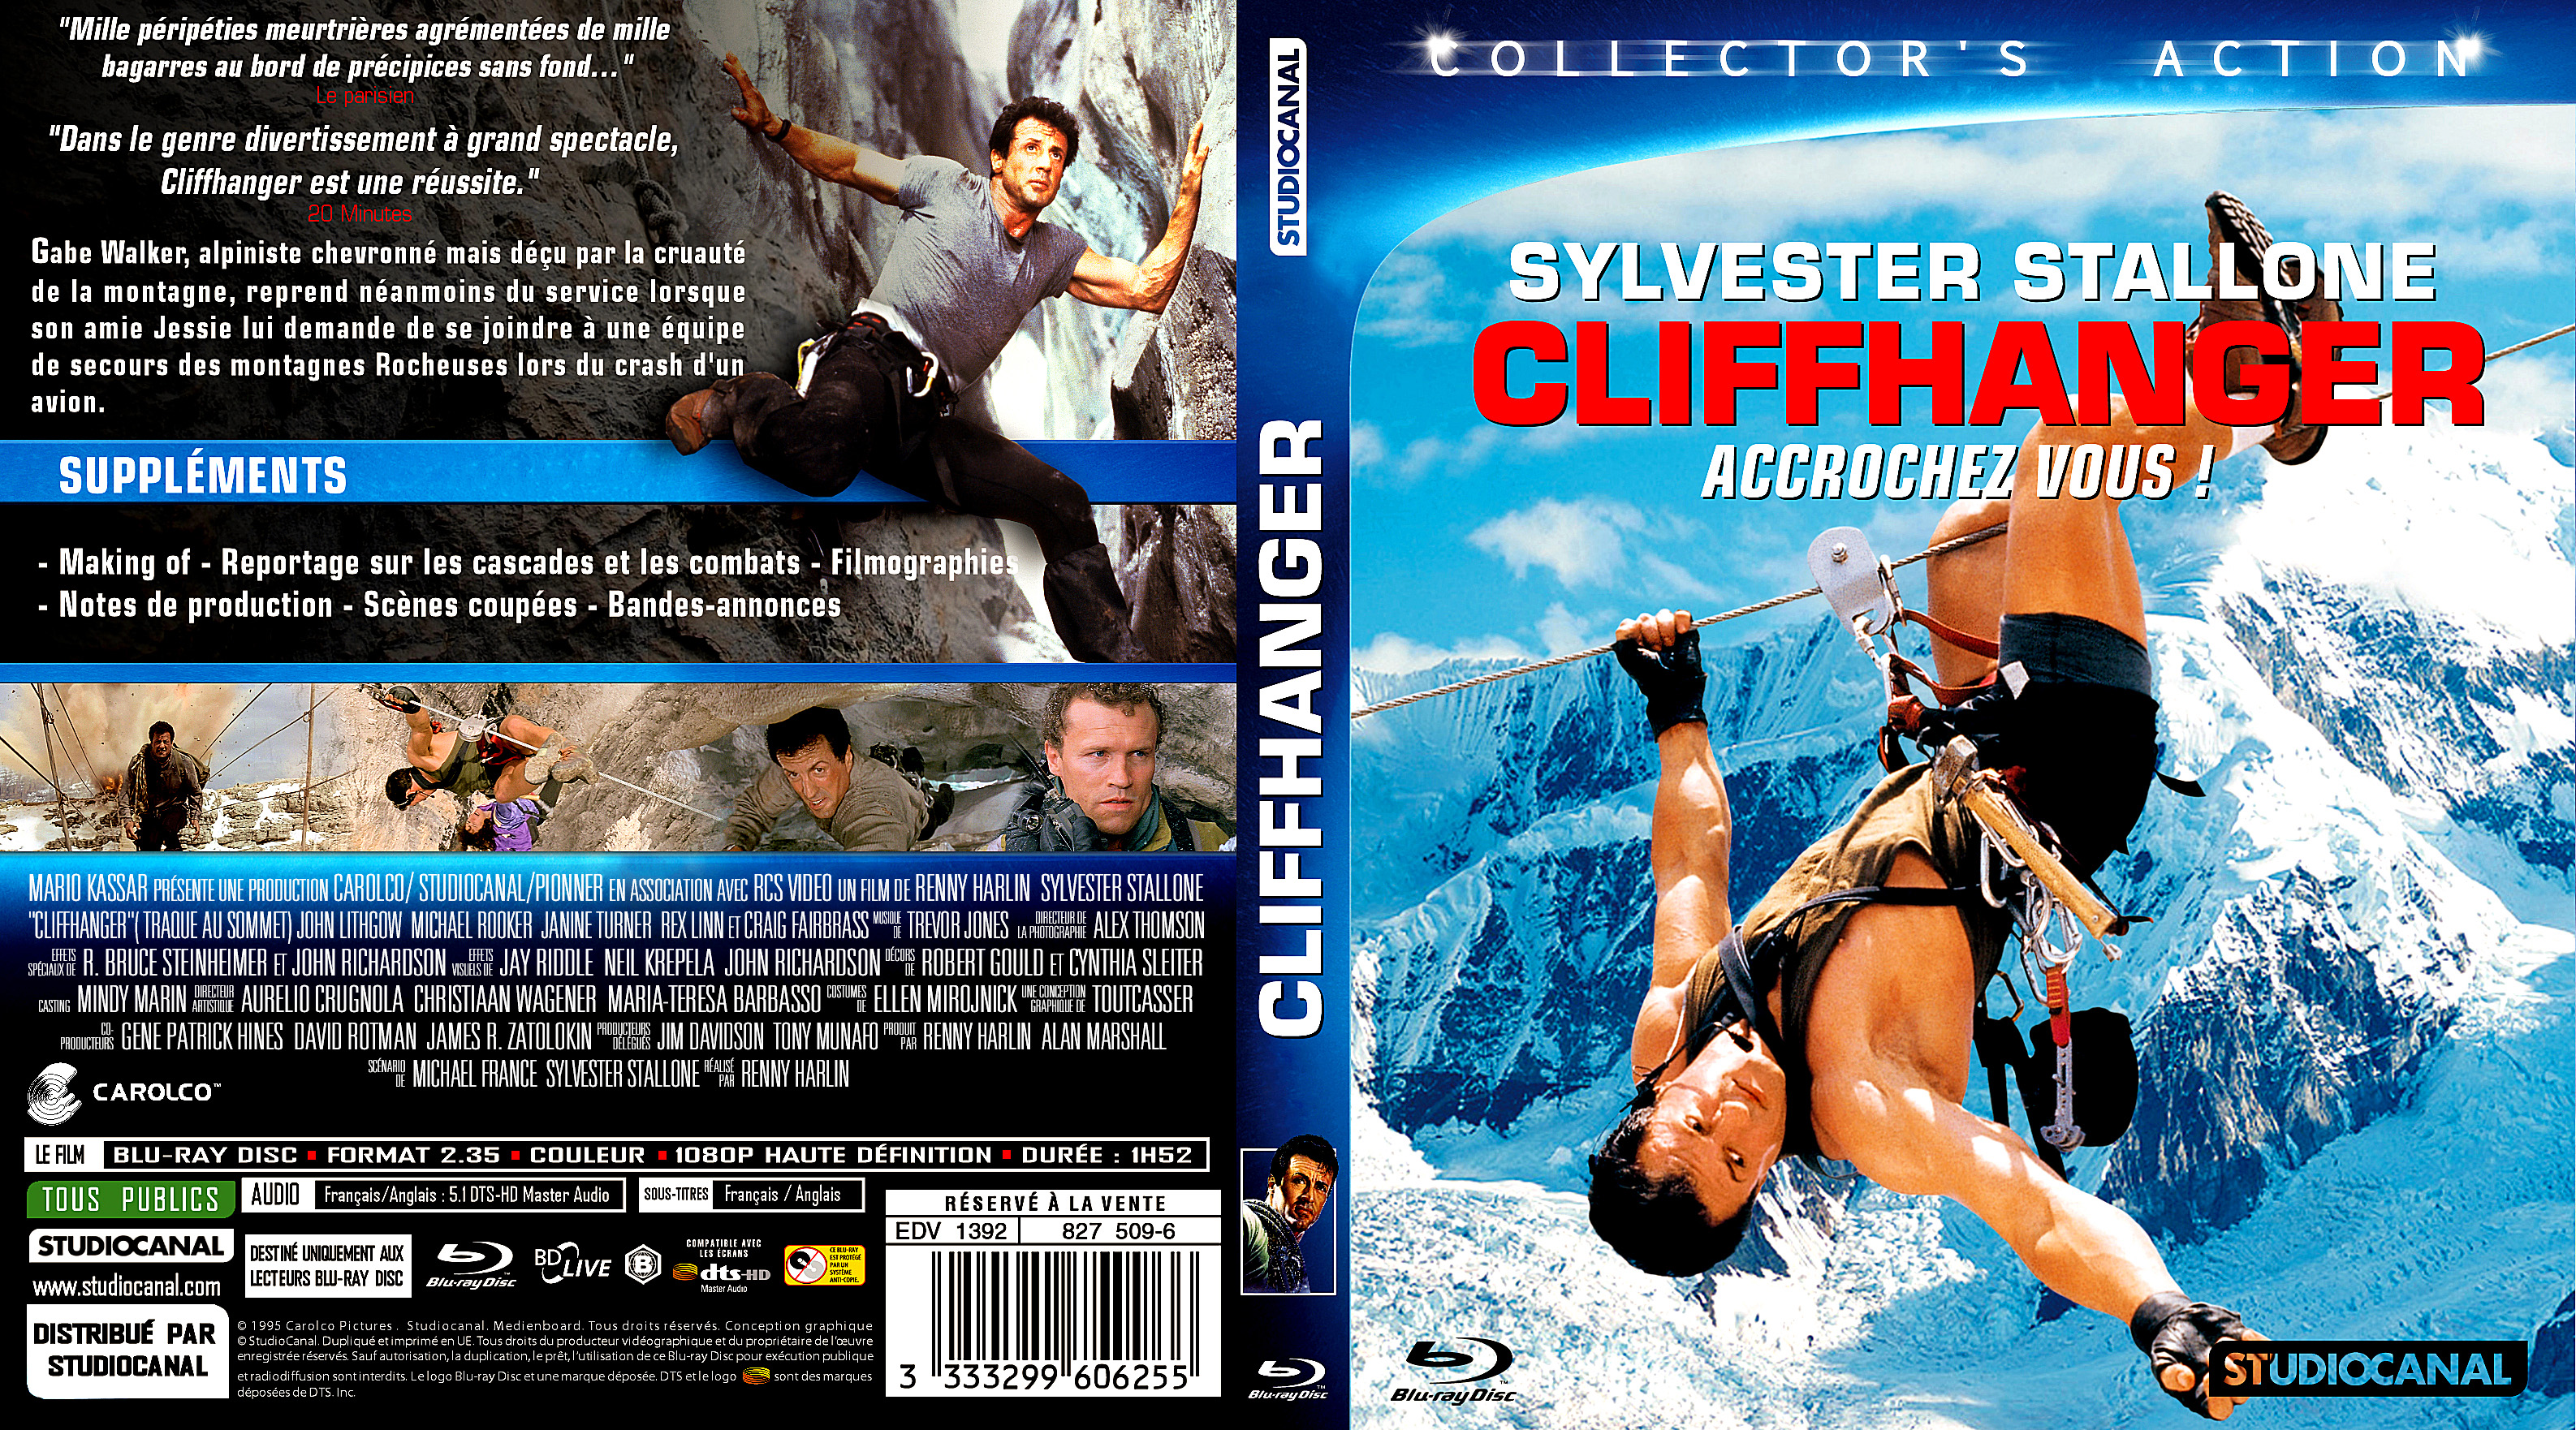 Jaquette Dvd De Cliffhanger Custom Blu Ray Cinéma Passion